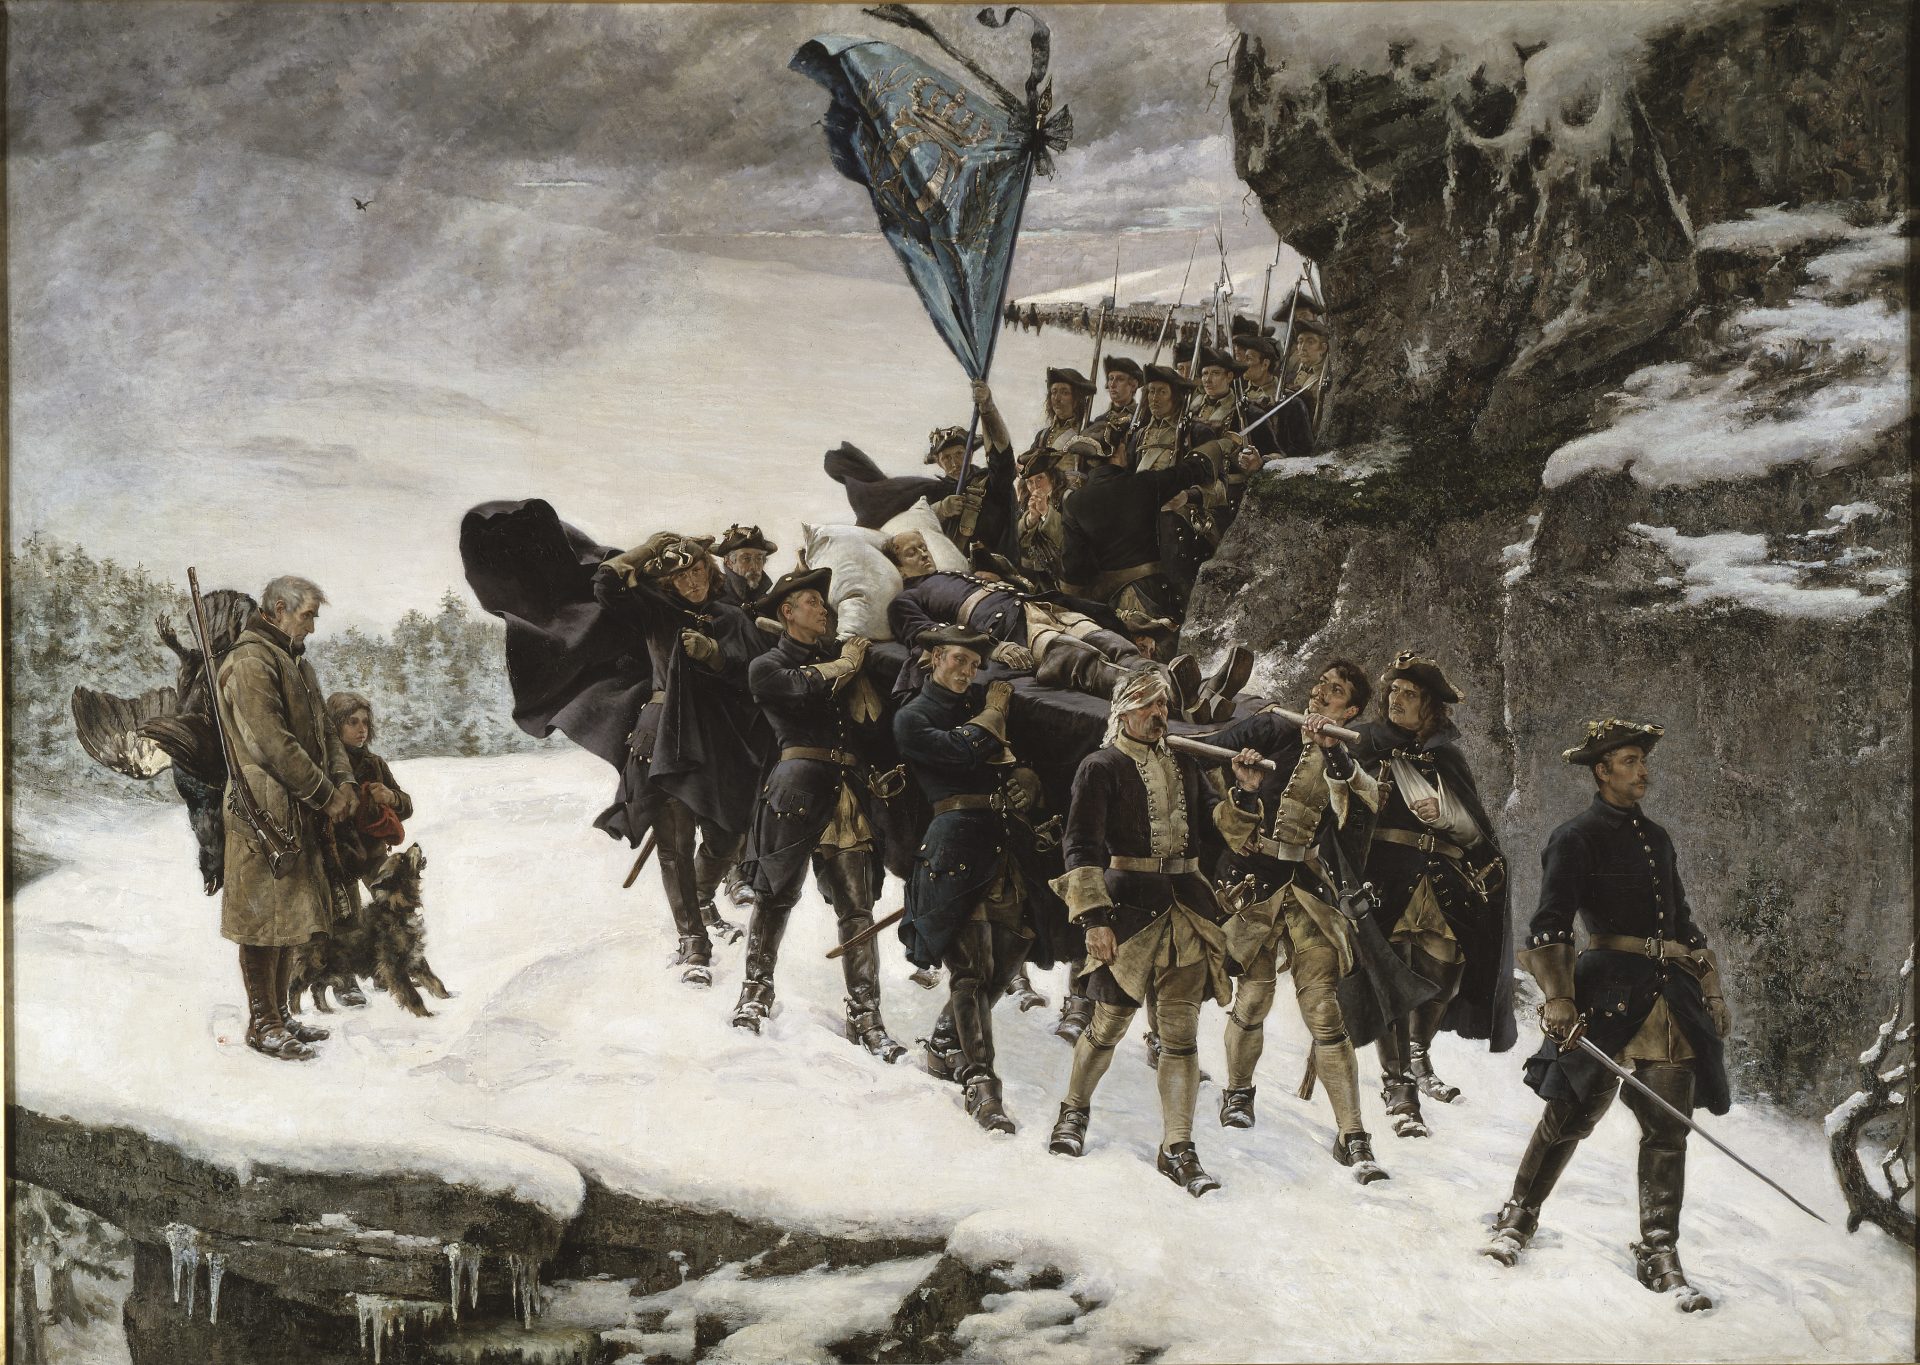 Oljemålning av en lång rad soldater som bär en bår med en död människa i snöstorm.